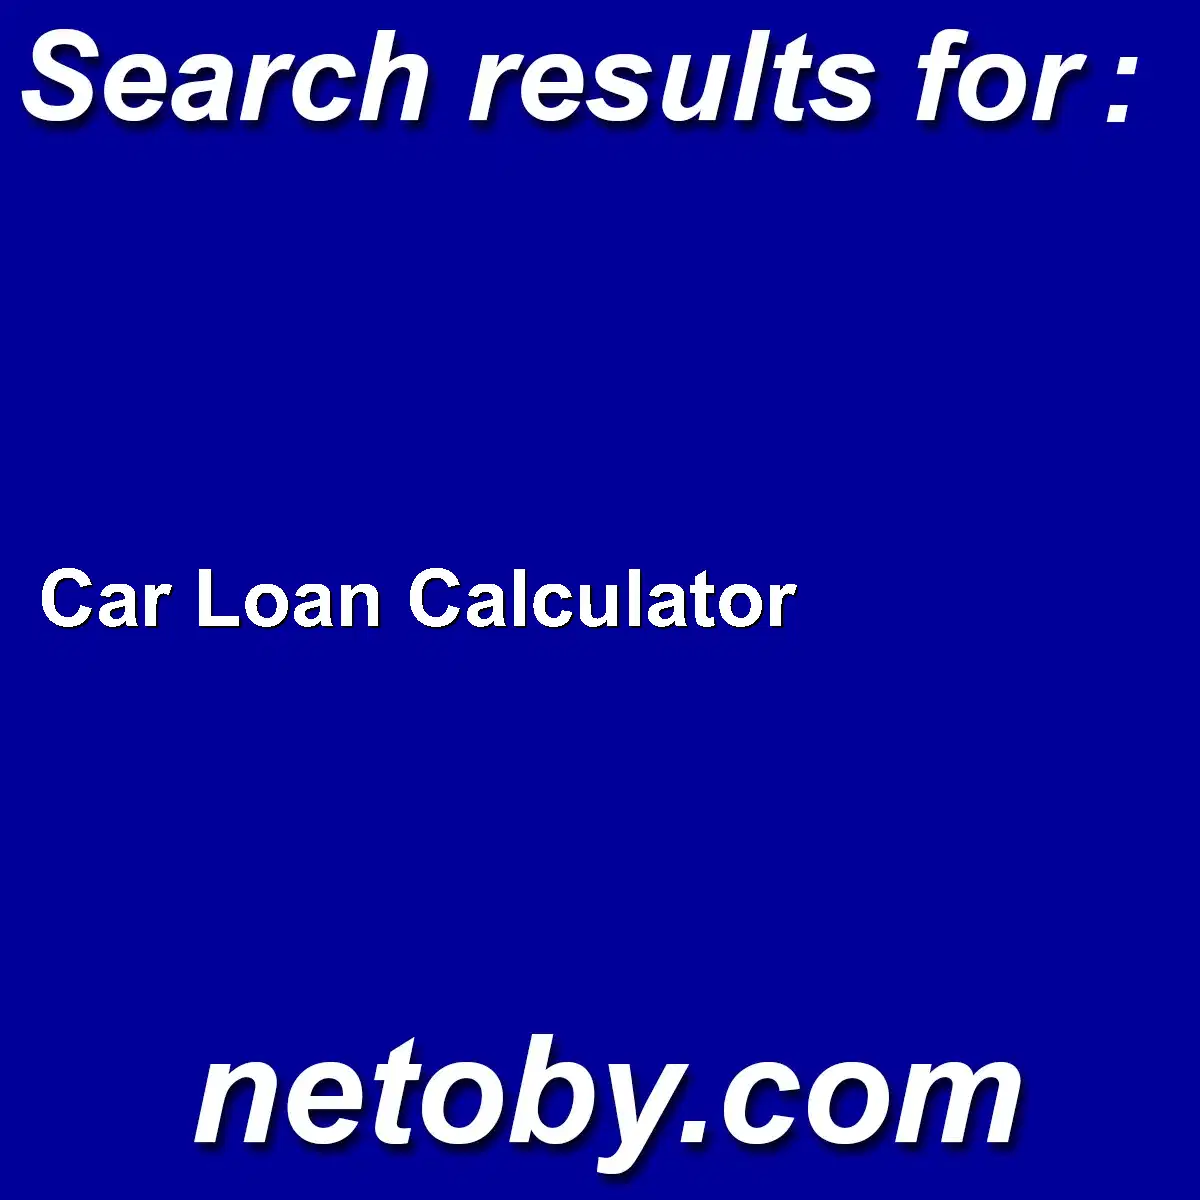 ﻿Car Loan Calculator